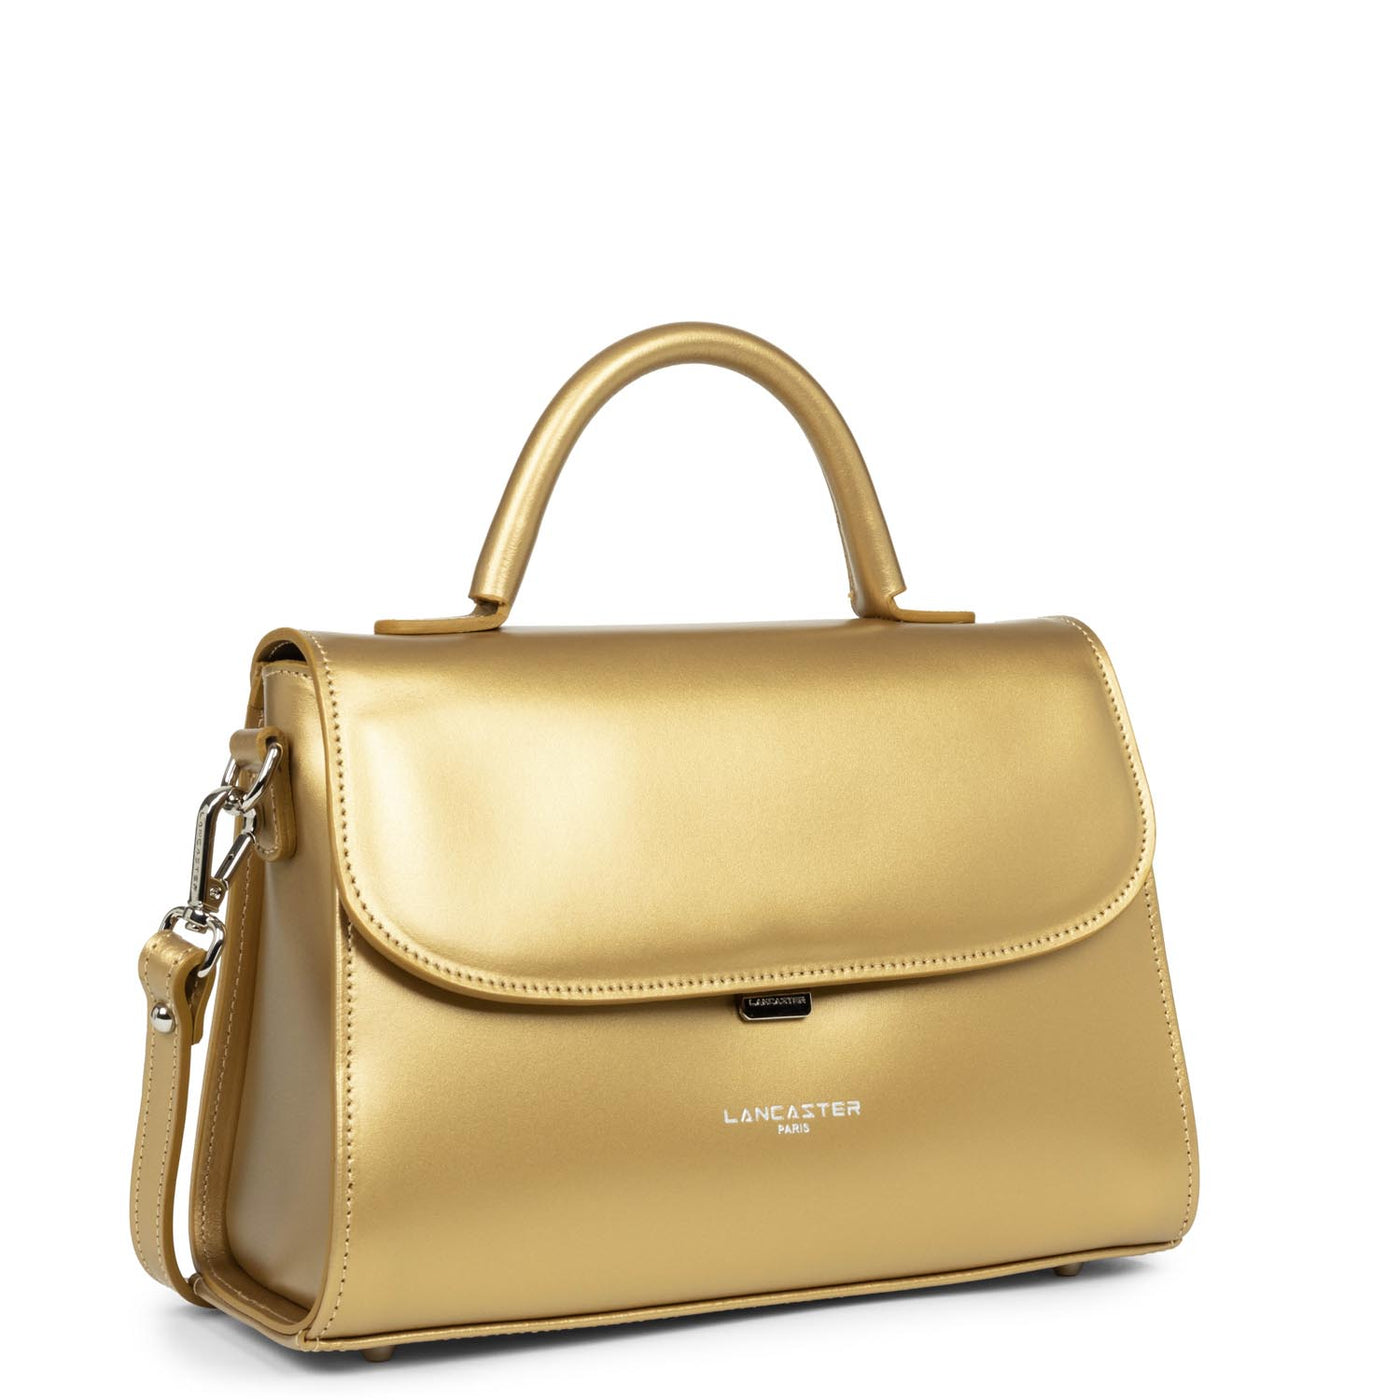 m handbag - suave even #couleur_gold-antic